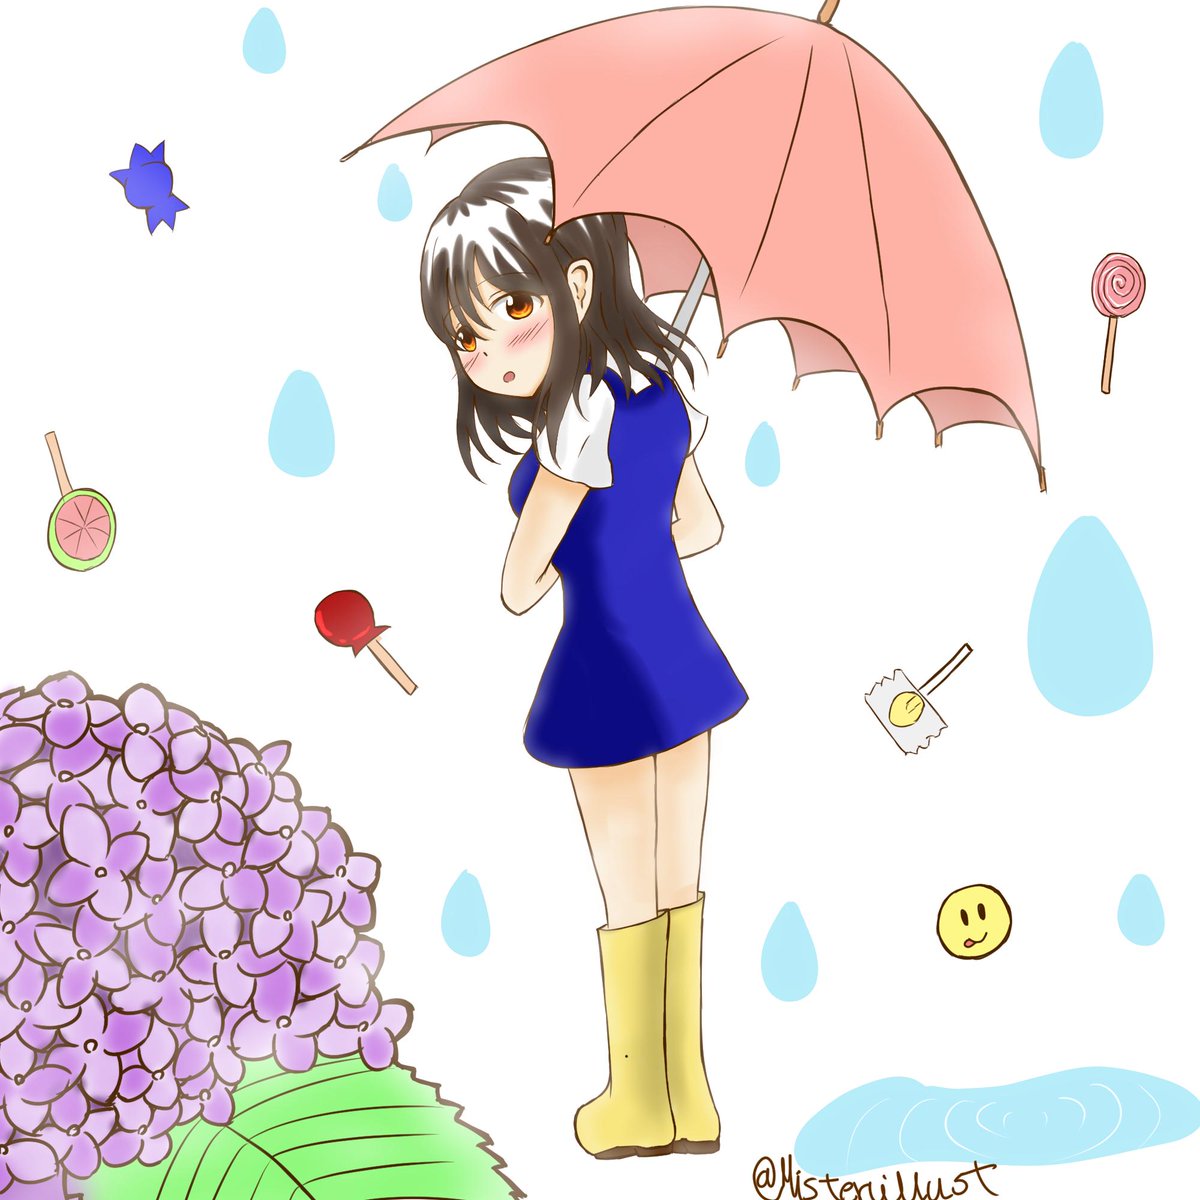 ミスタァ Sur Twitter 梅雨のイラストを描きました イラスト 梅雨 雨 飴 紫陽花 アジサイ ６月イラスト 梅雨 イラスト 梅雨入り